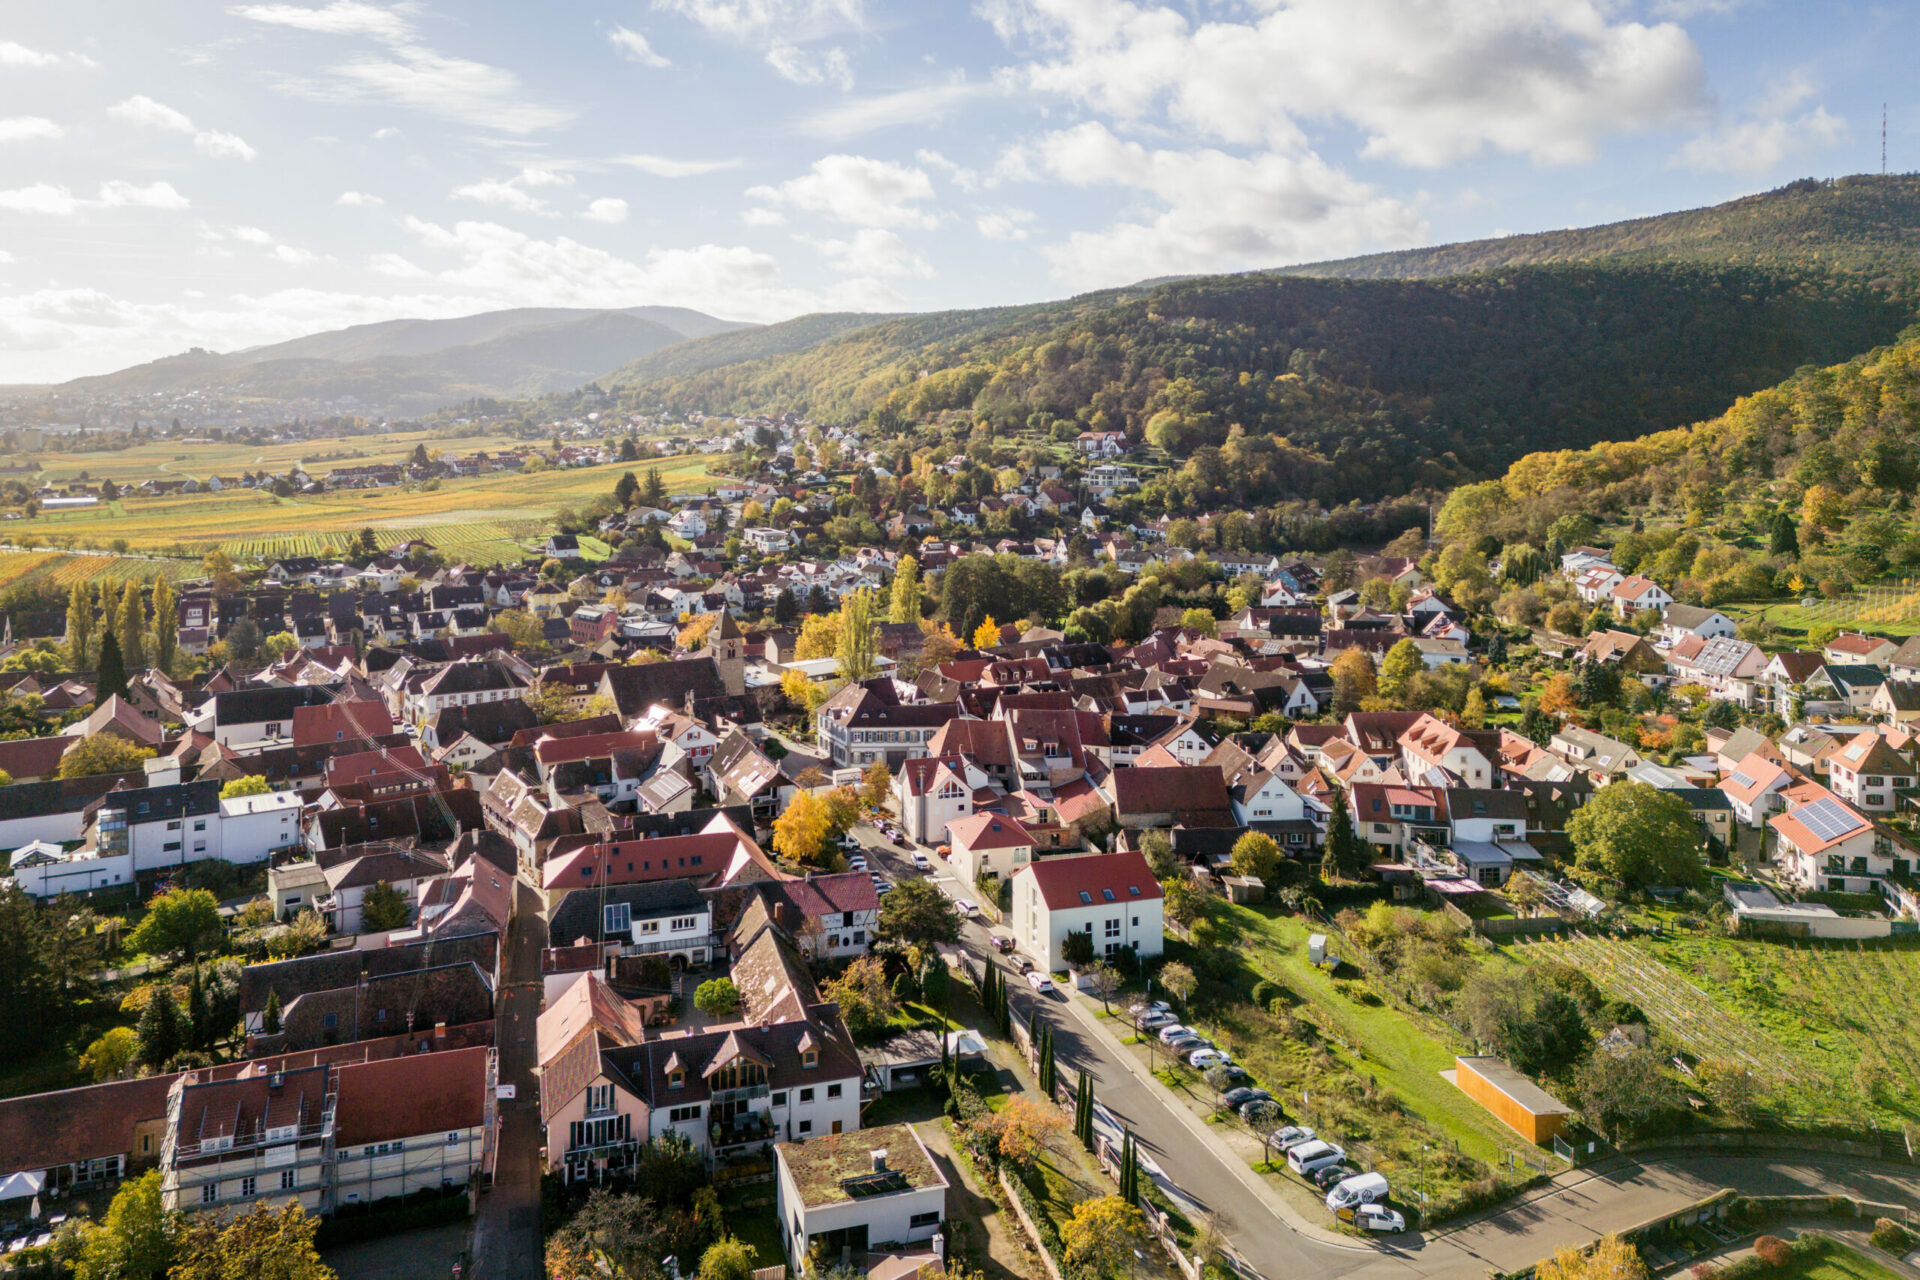 Luftaufnahme des malerischen Dorfs Gimmeldingen mit dichter Bebauung, umgeben von herbstlichen Bäumen und sanften Hügeln in einer berühmten Weinregion unter klarem Himmel.